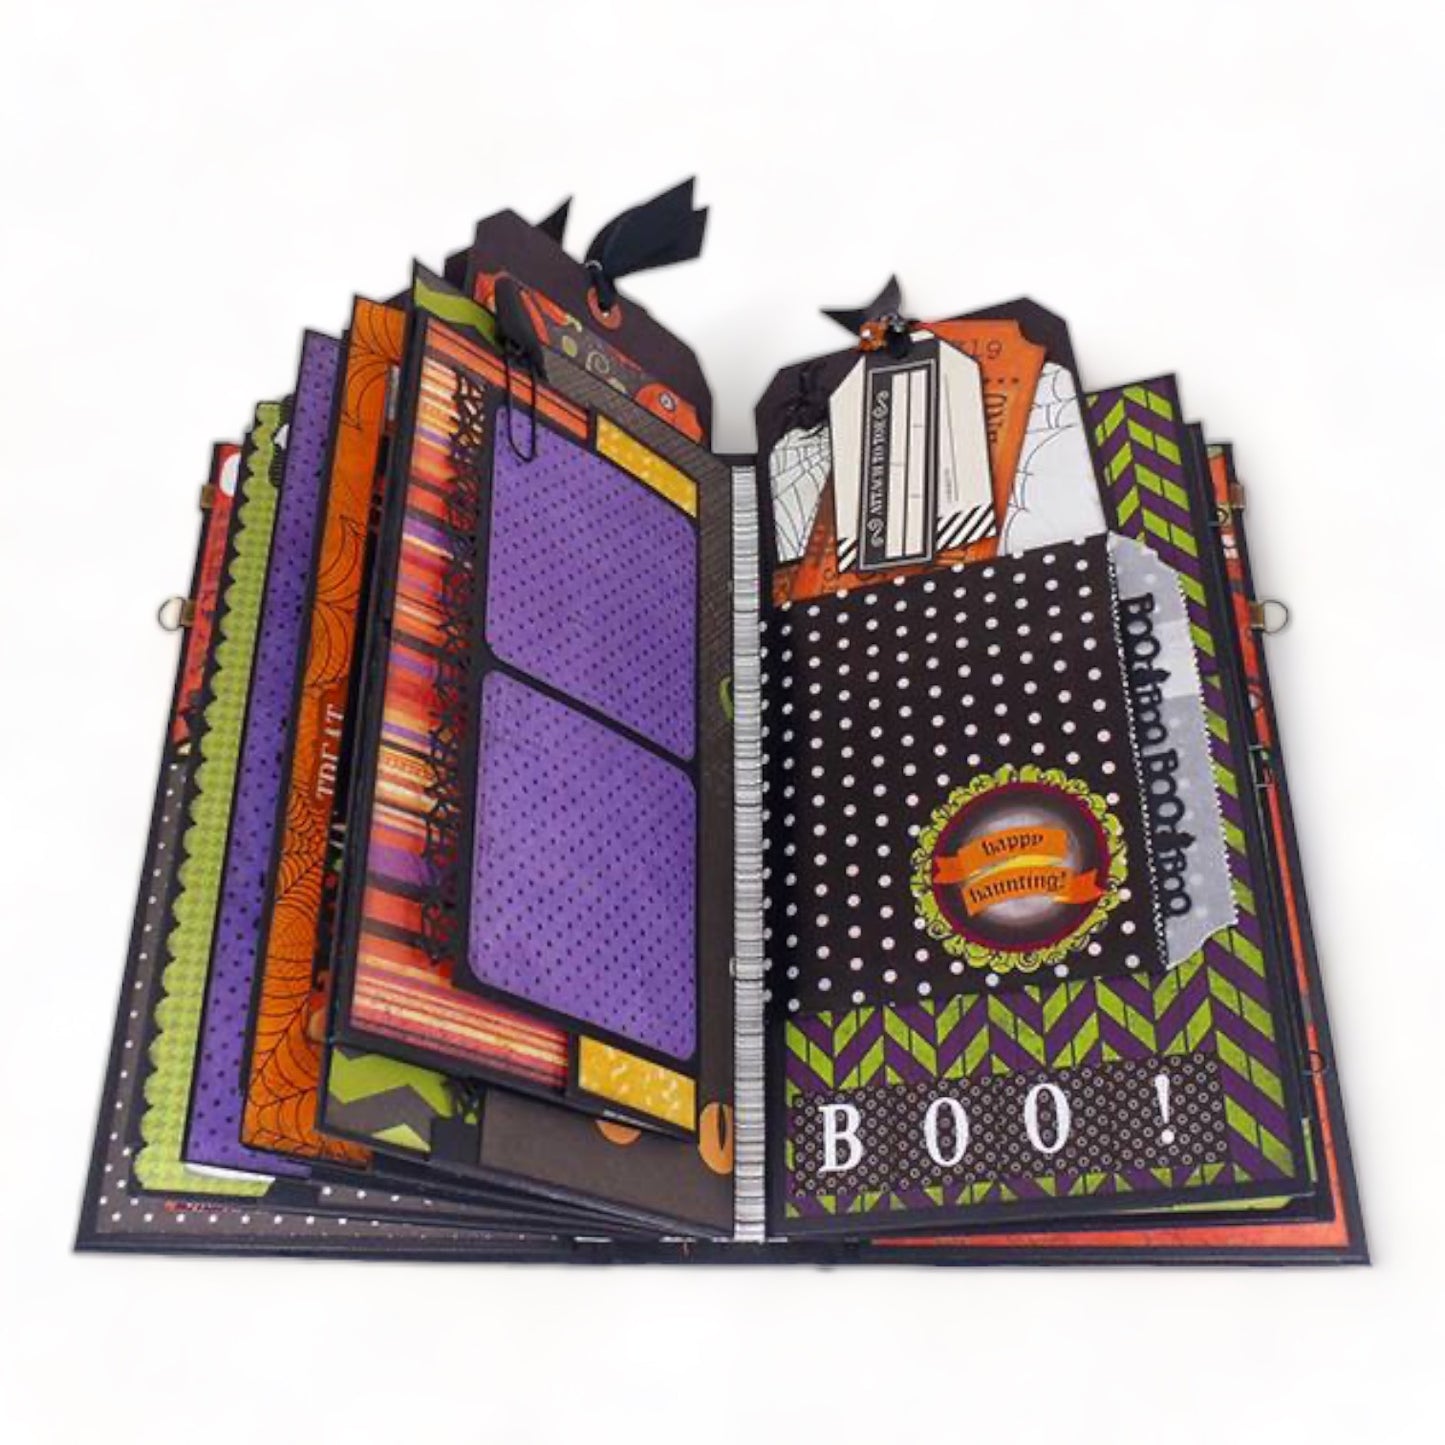 Hocus Pocus Boot with Mini Album